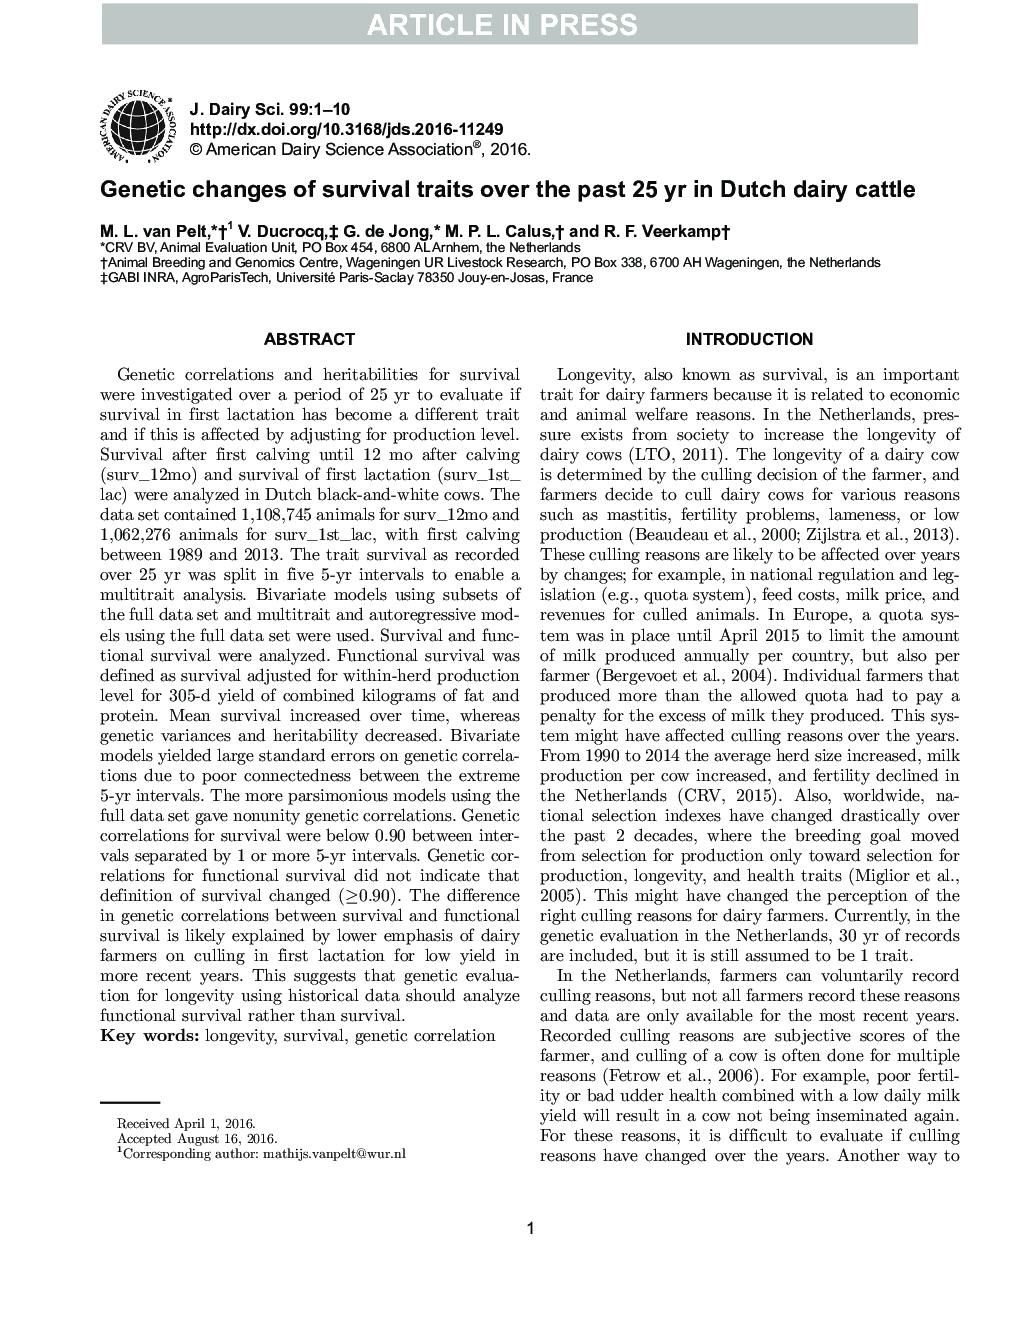 تغییرات ژنتیکی از ویژگی های بقا در طی 25 سال گذشته در گاوهای شیری هلندی 